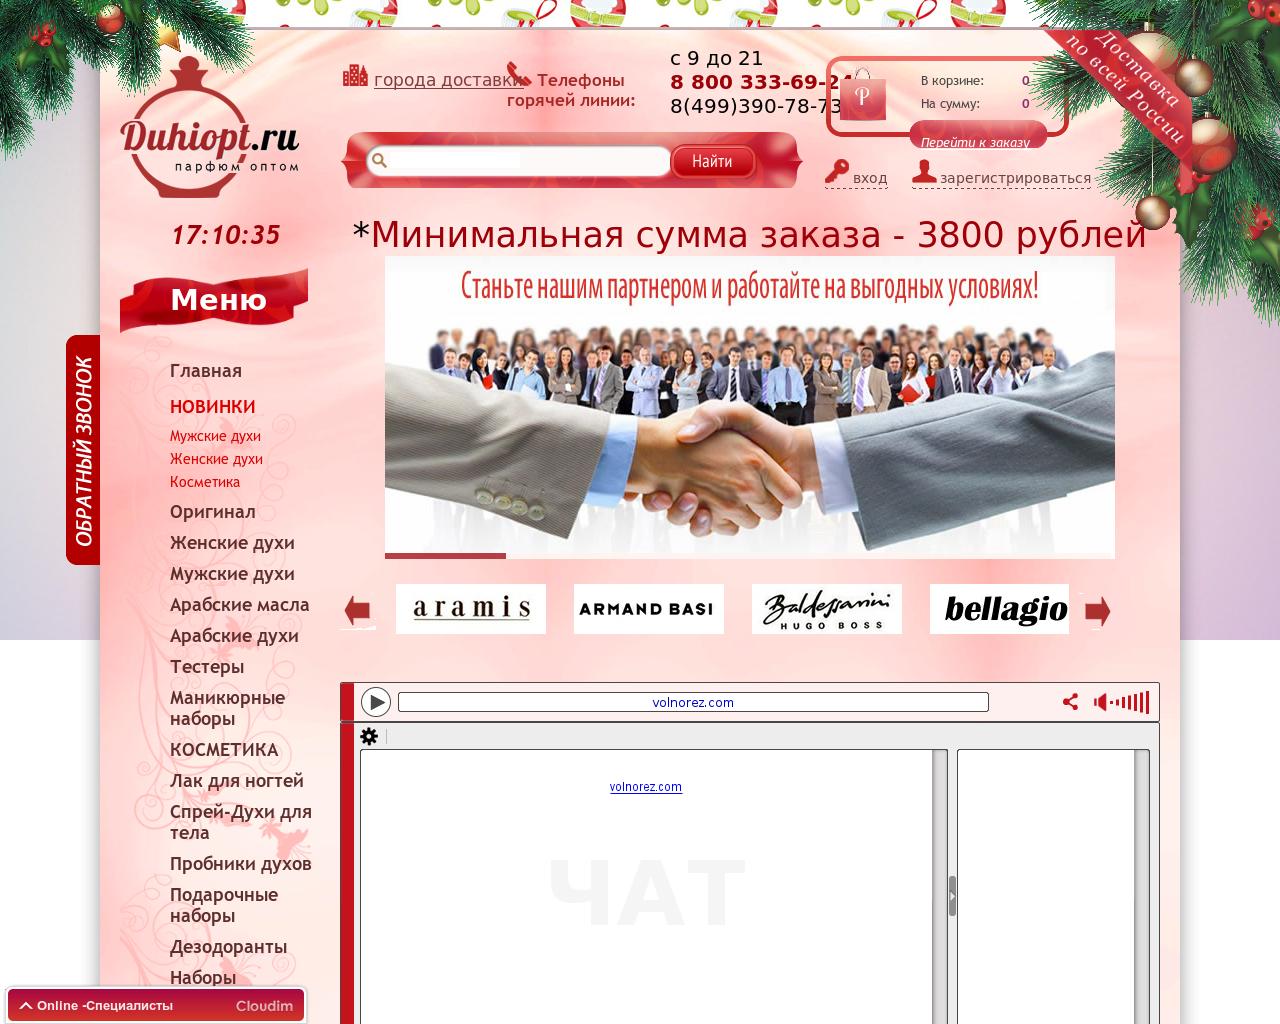 Изображение сайта duhiopt.ru в разрешении 1280x1024